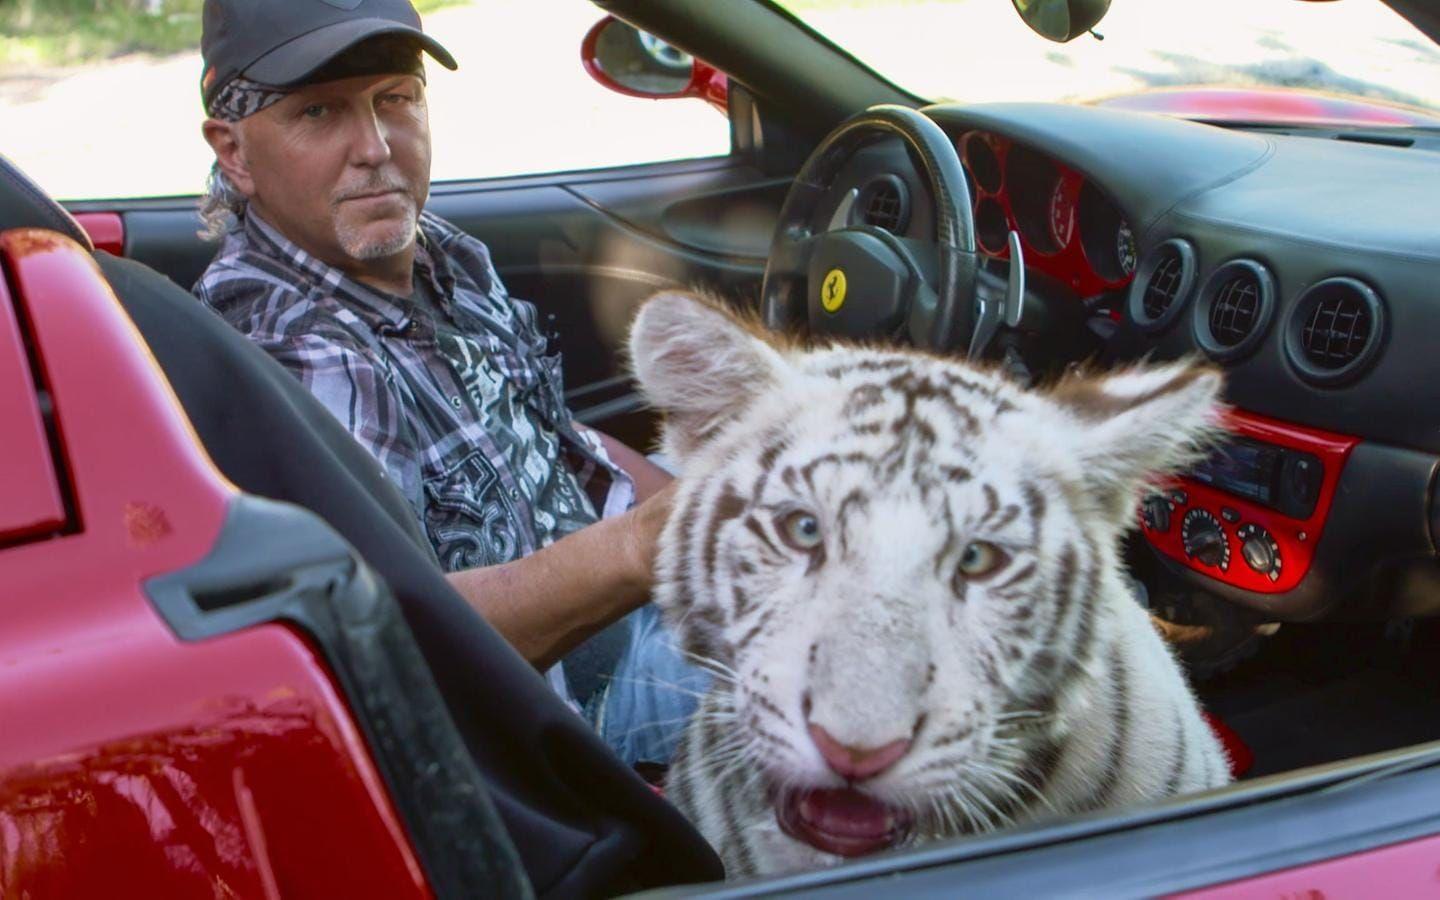 Jeff Lowe och hans fru Lauren Lowe misstänkts ha vanvårdat djuren. Jeff Lowe är tidigare affärspartner till Joe Exotic, huvudpersonen i serien ”Tiger King”.